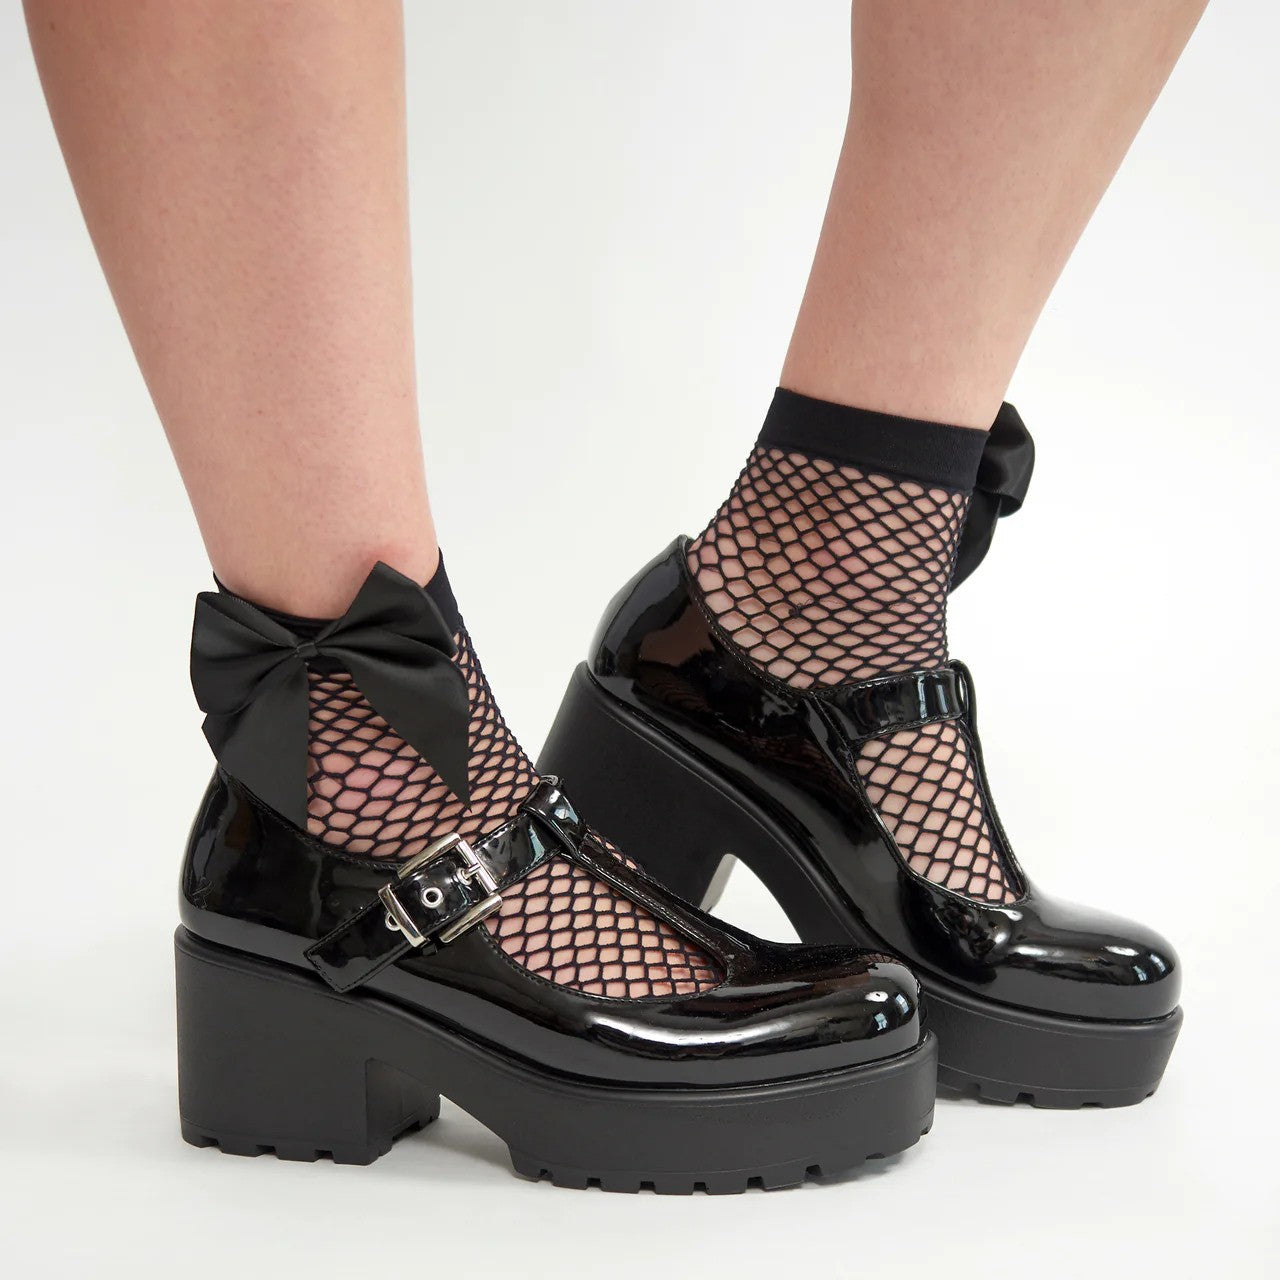 Sourpuss Fencenet Bow Ankle Gothic Fishnet Socks